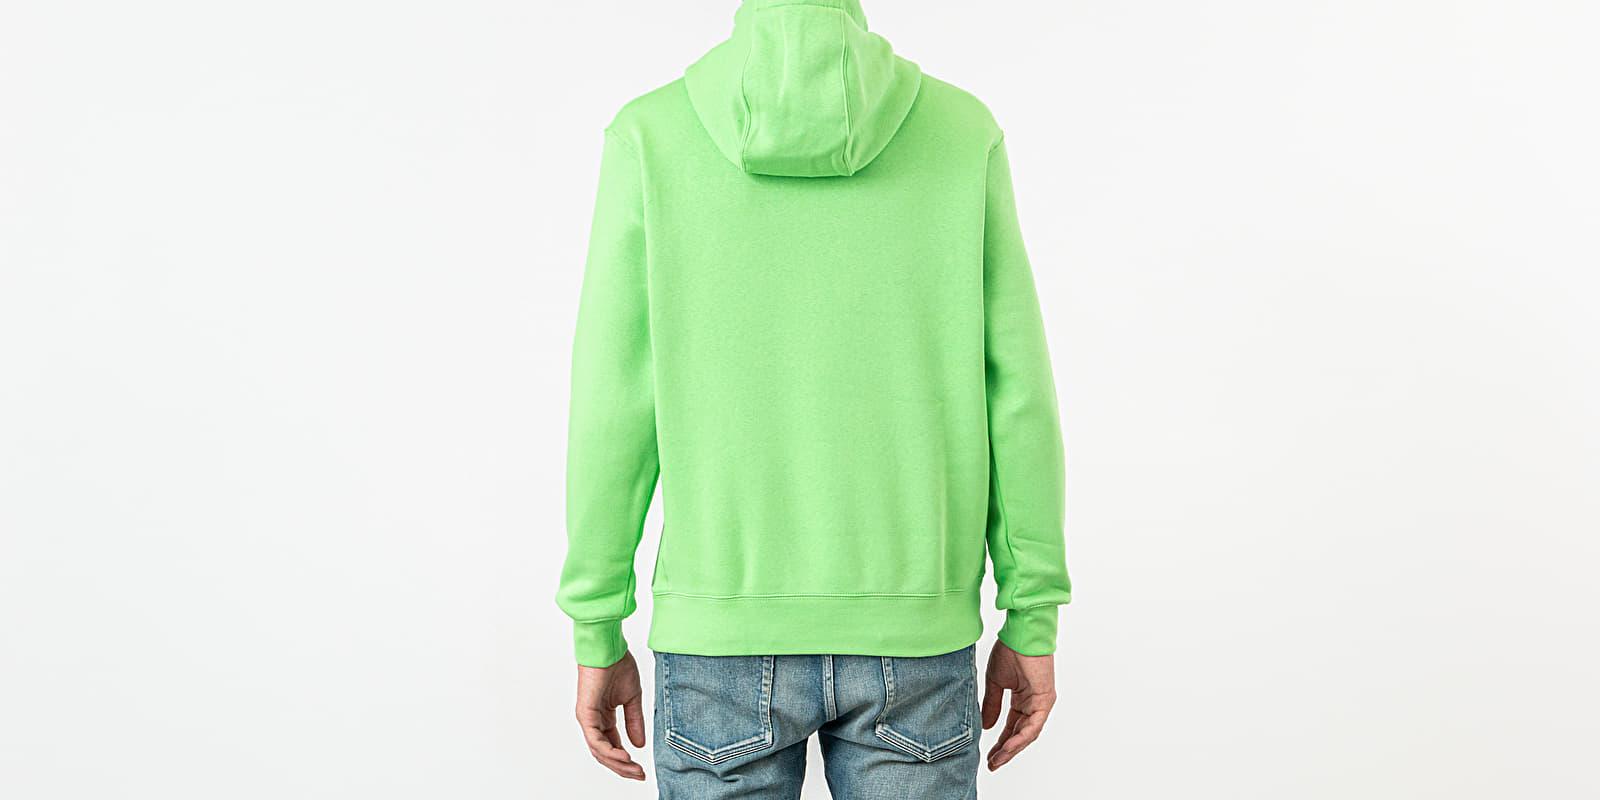 nike green nebula hoodie